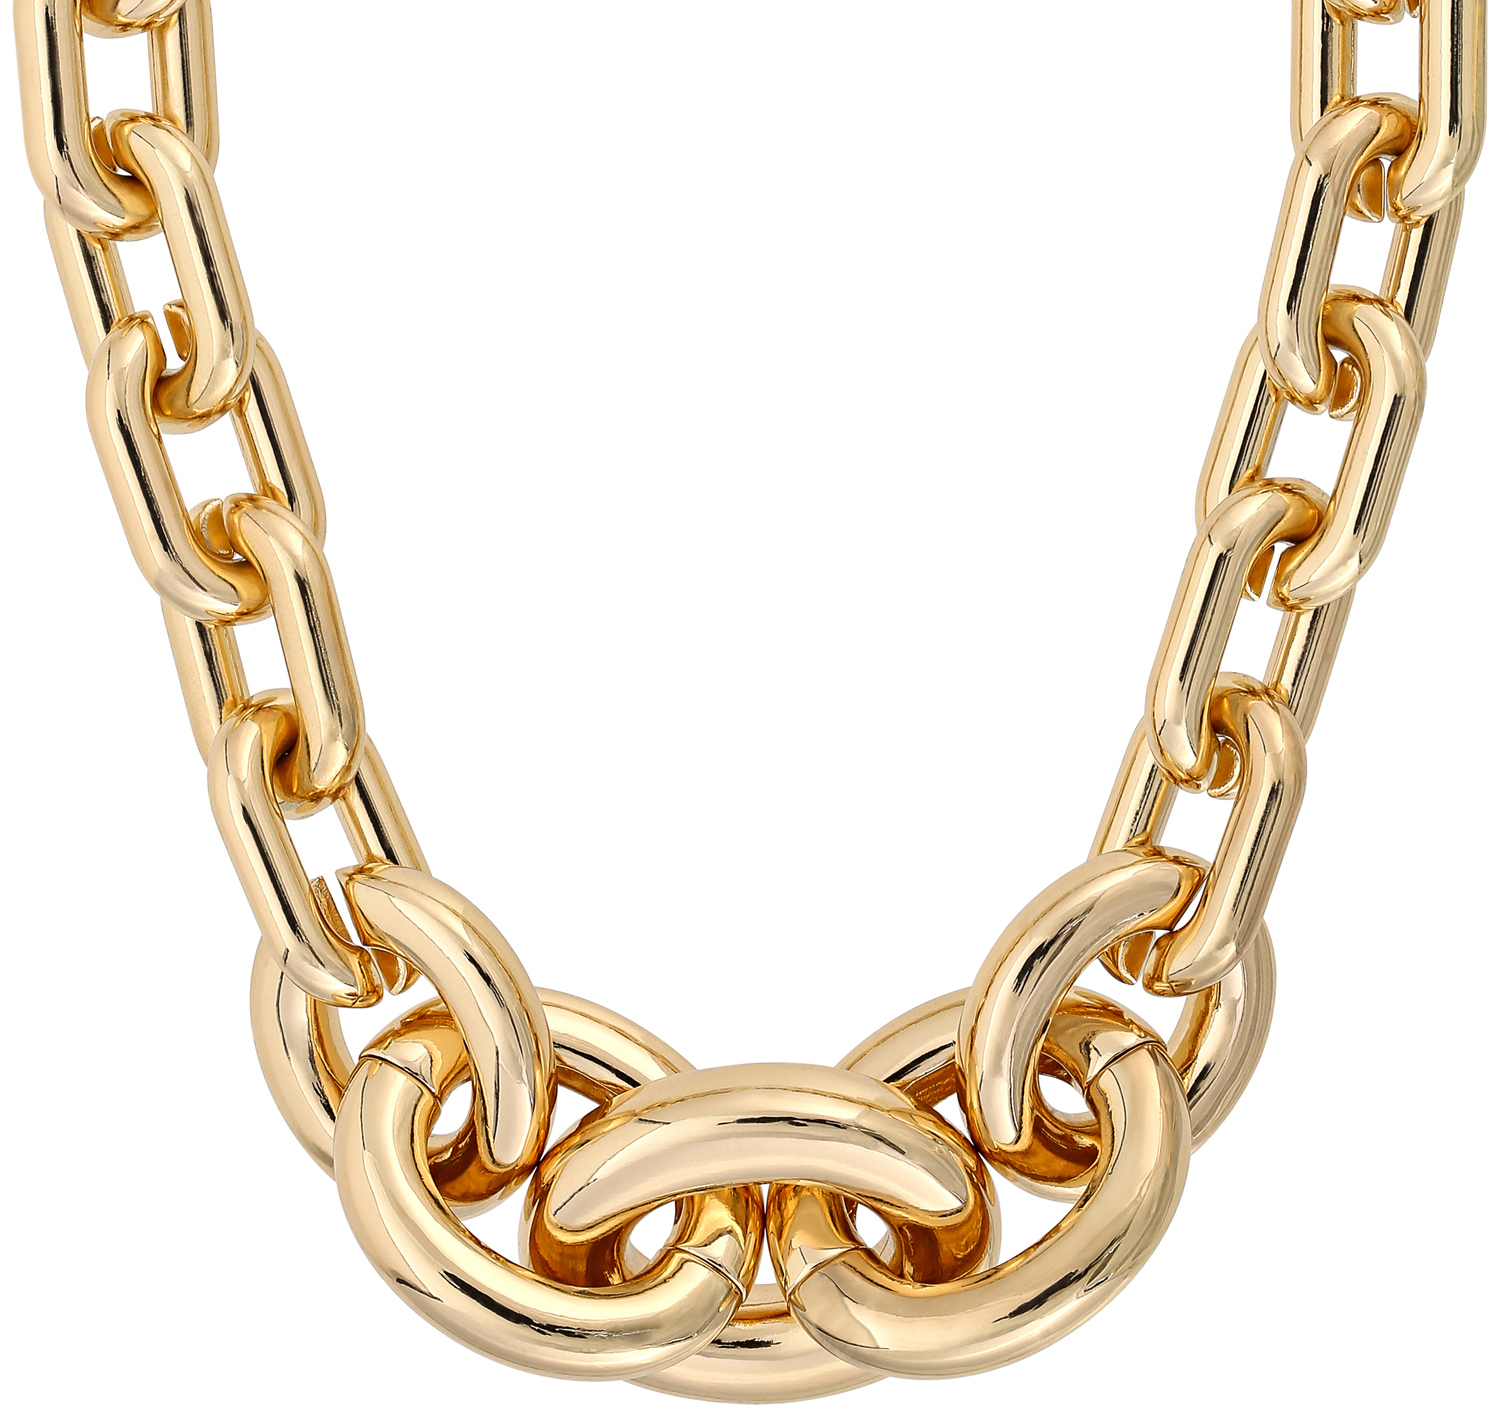 Collar statement - Fancy Gold